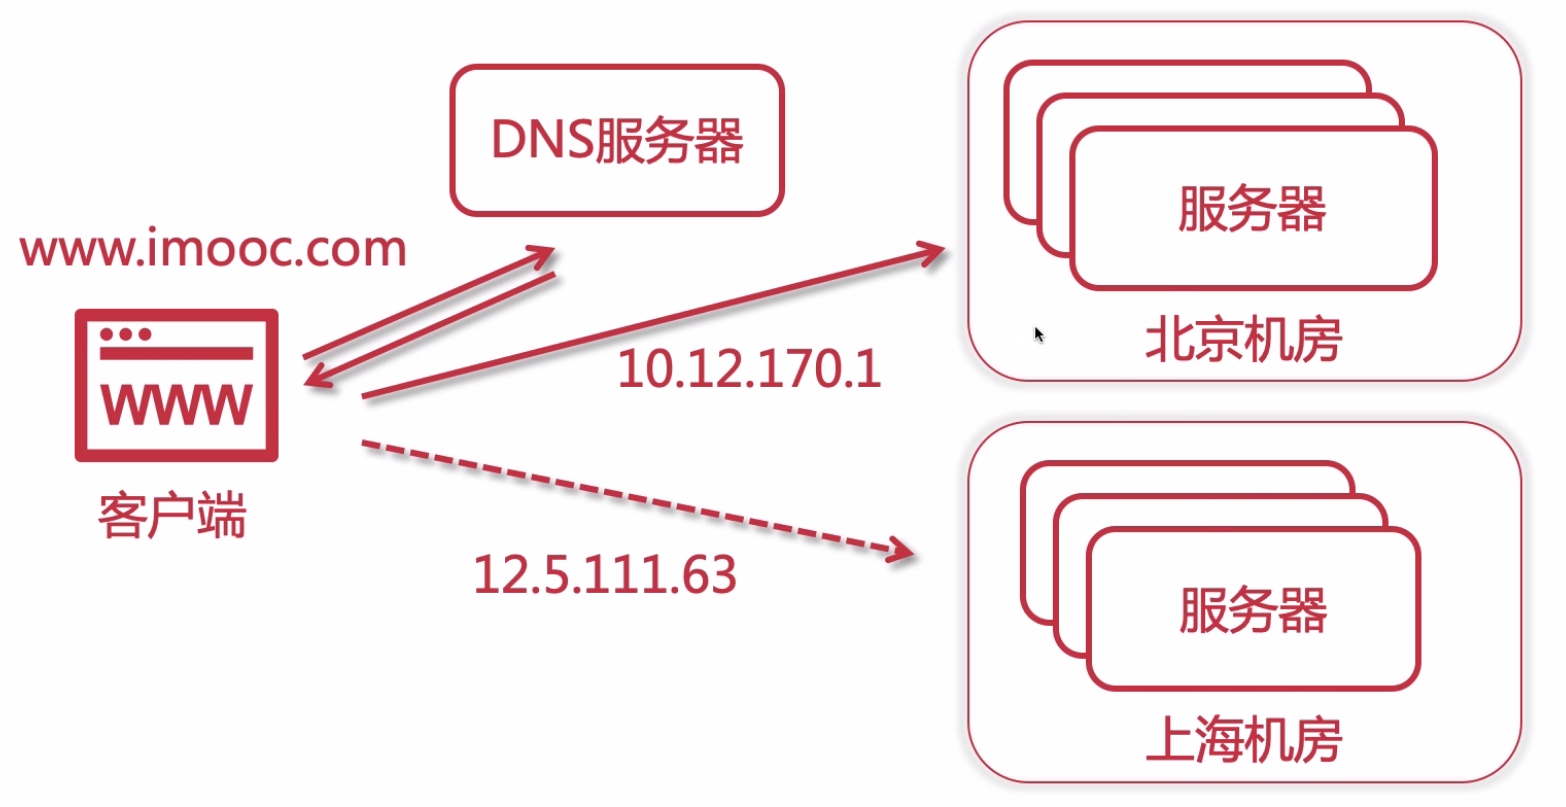 14-四层, 七层与DNS负载均衡_负载均衡